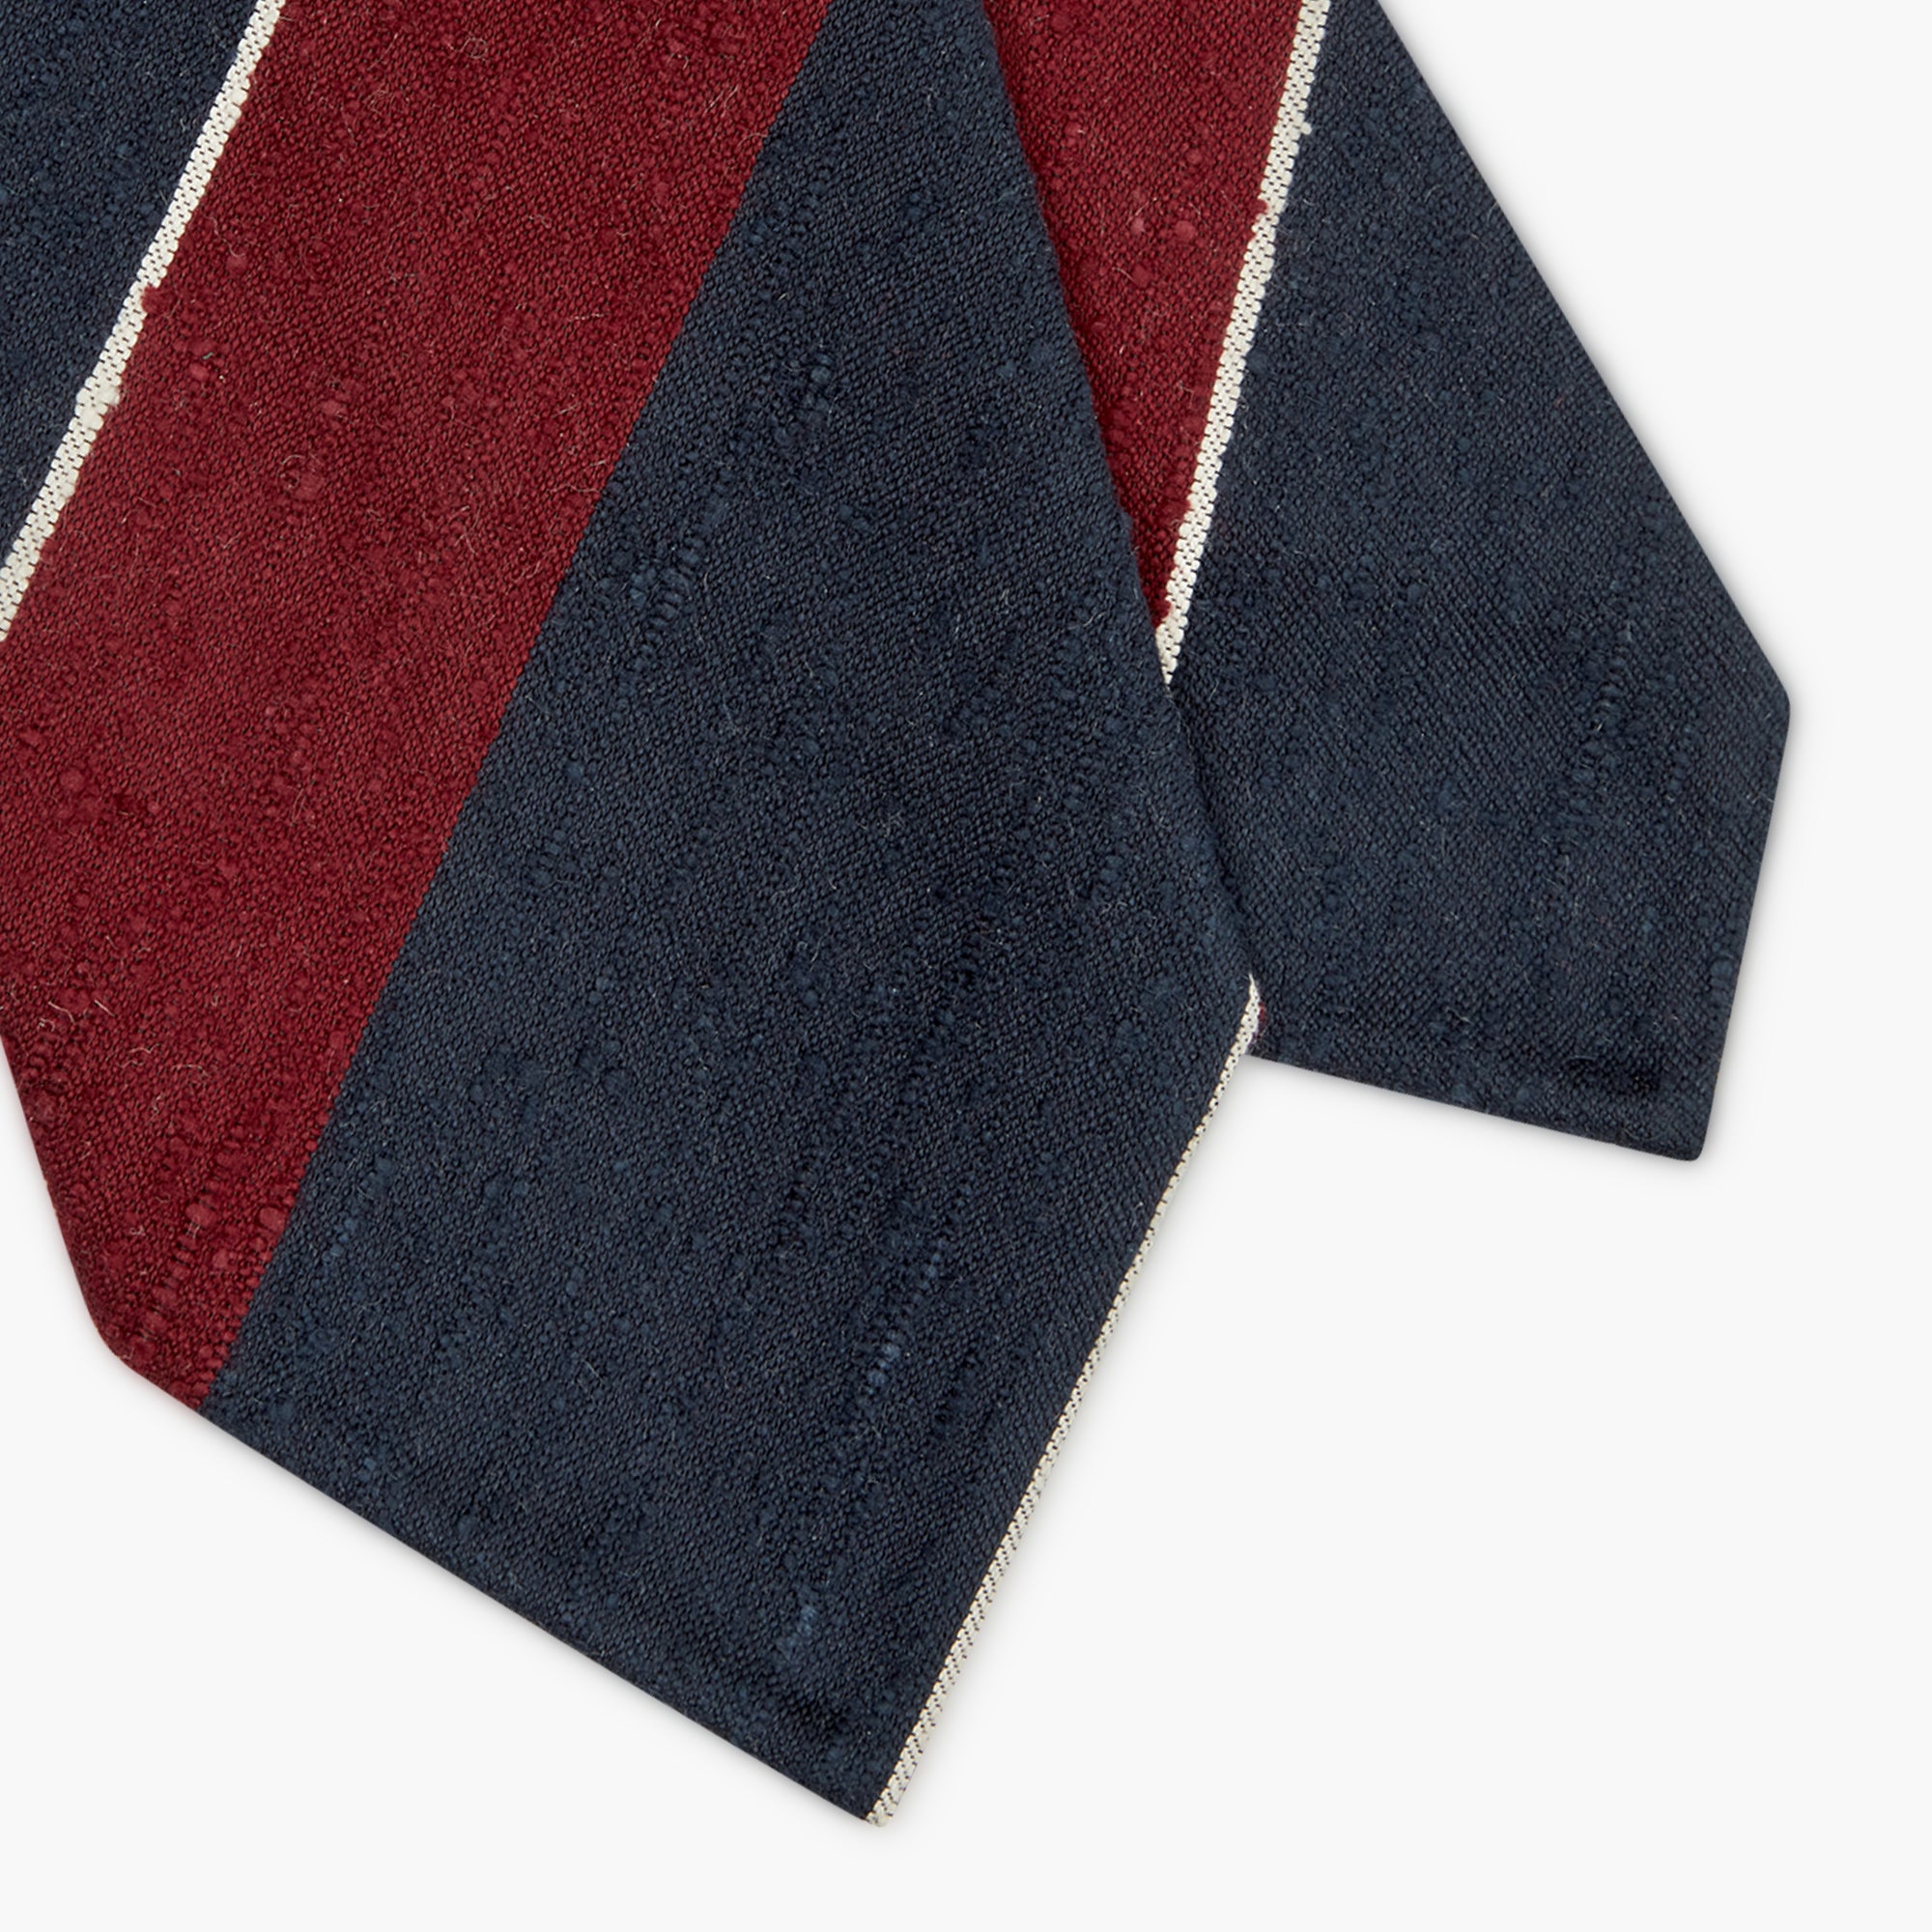 3-Fold Multi Stripe Shantung Silk Tie - Bordeaux Blue